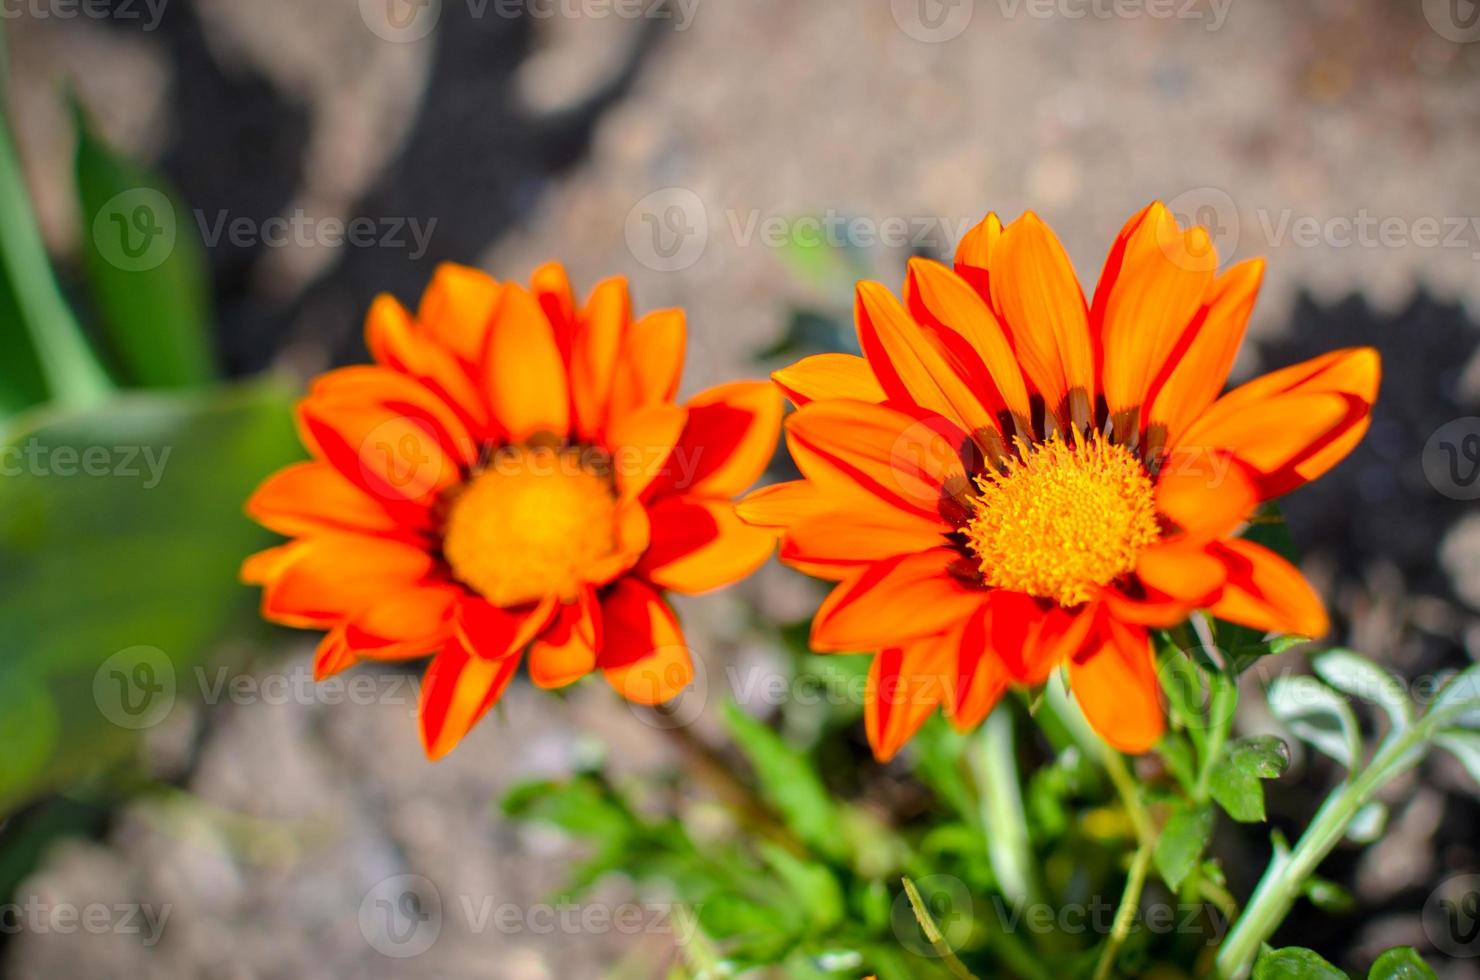 primo piano di due gazania rigens fiori con petali arancioni foto